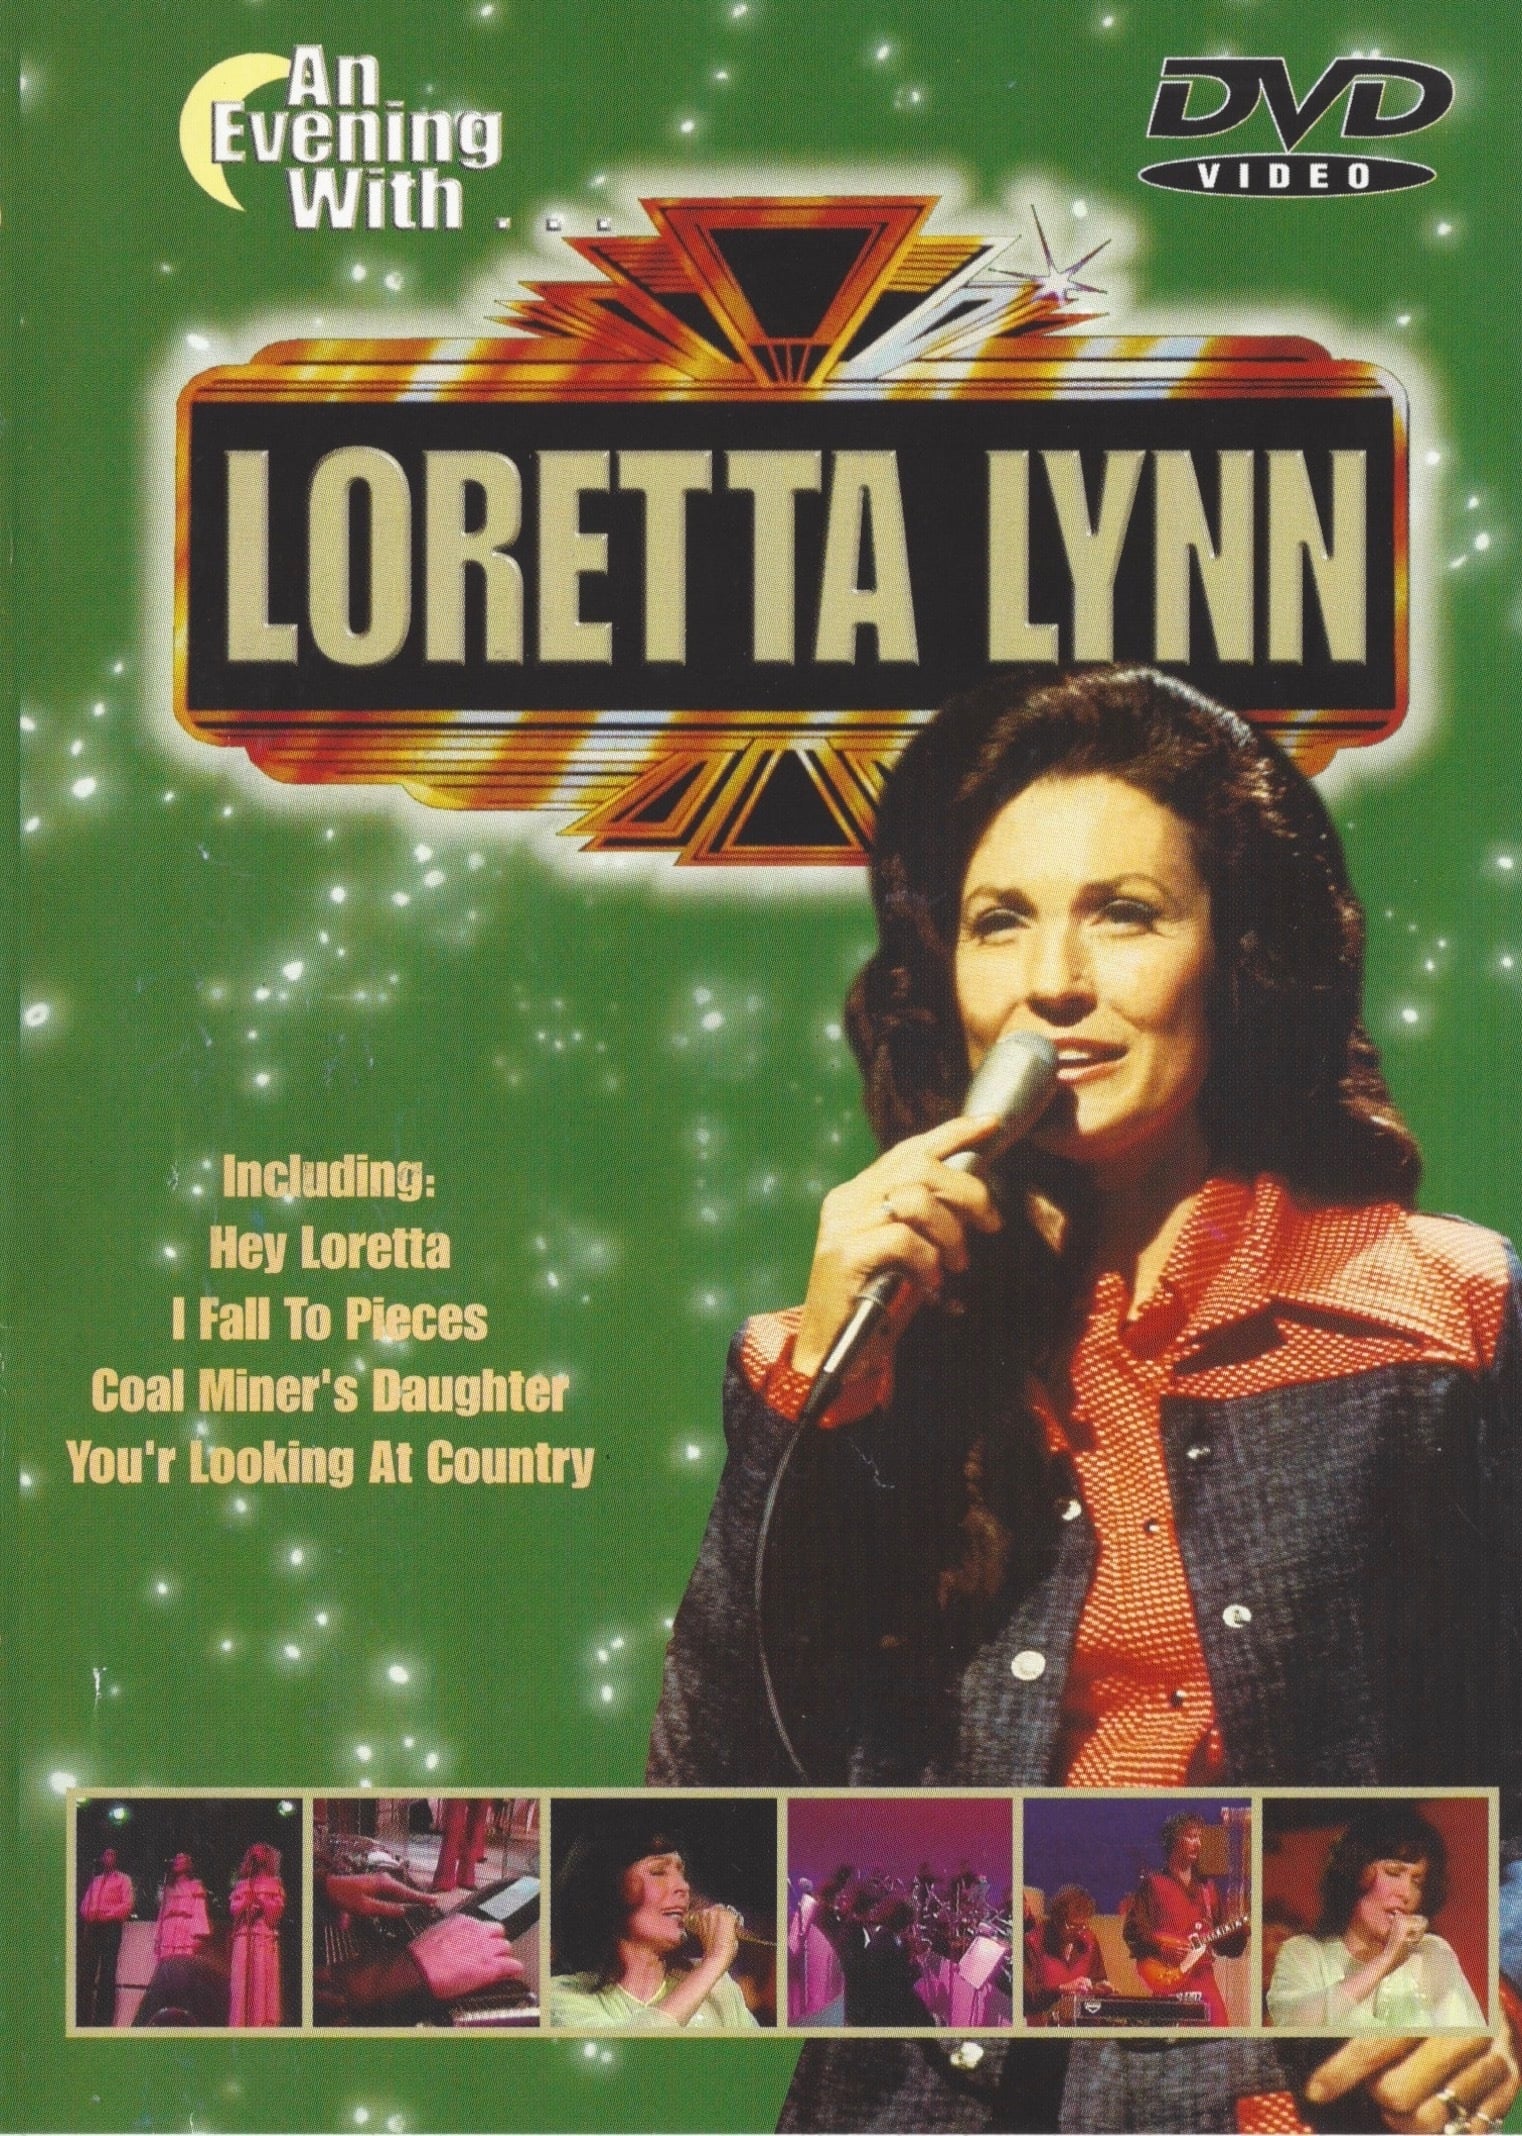 An evening with Loretta Lynn